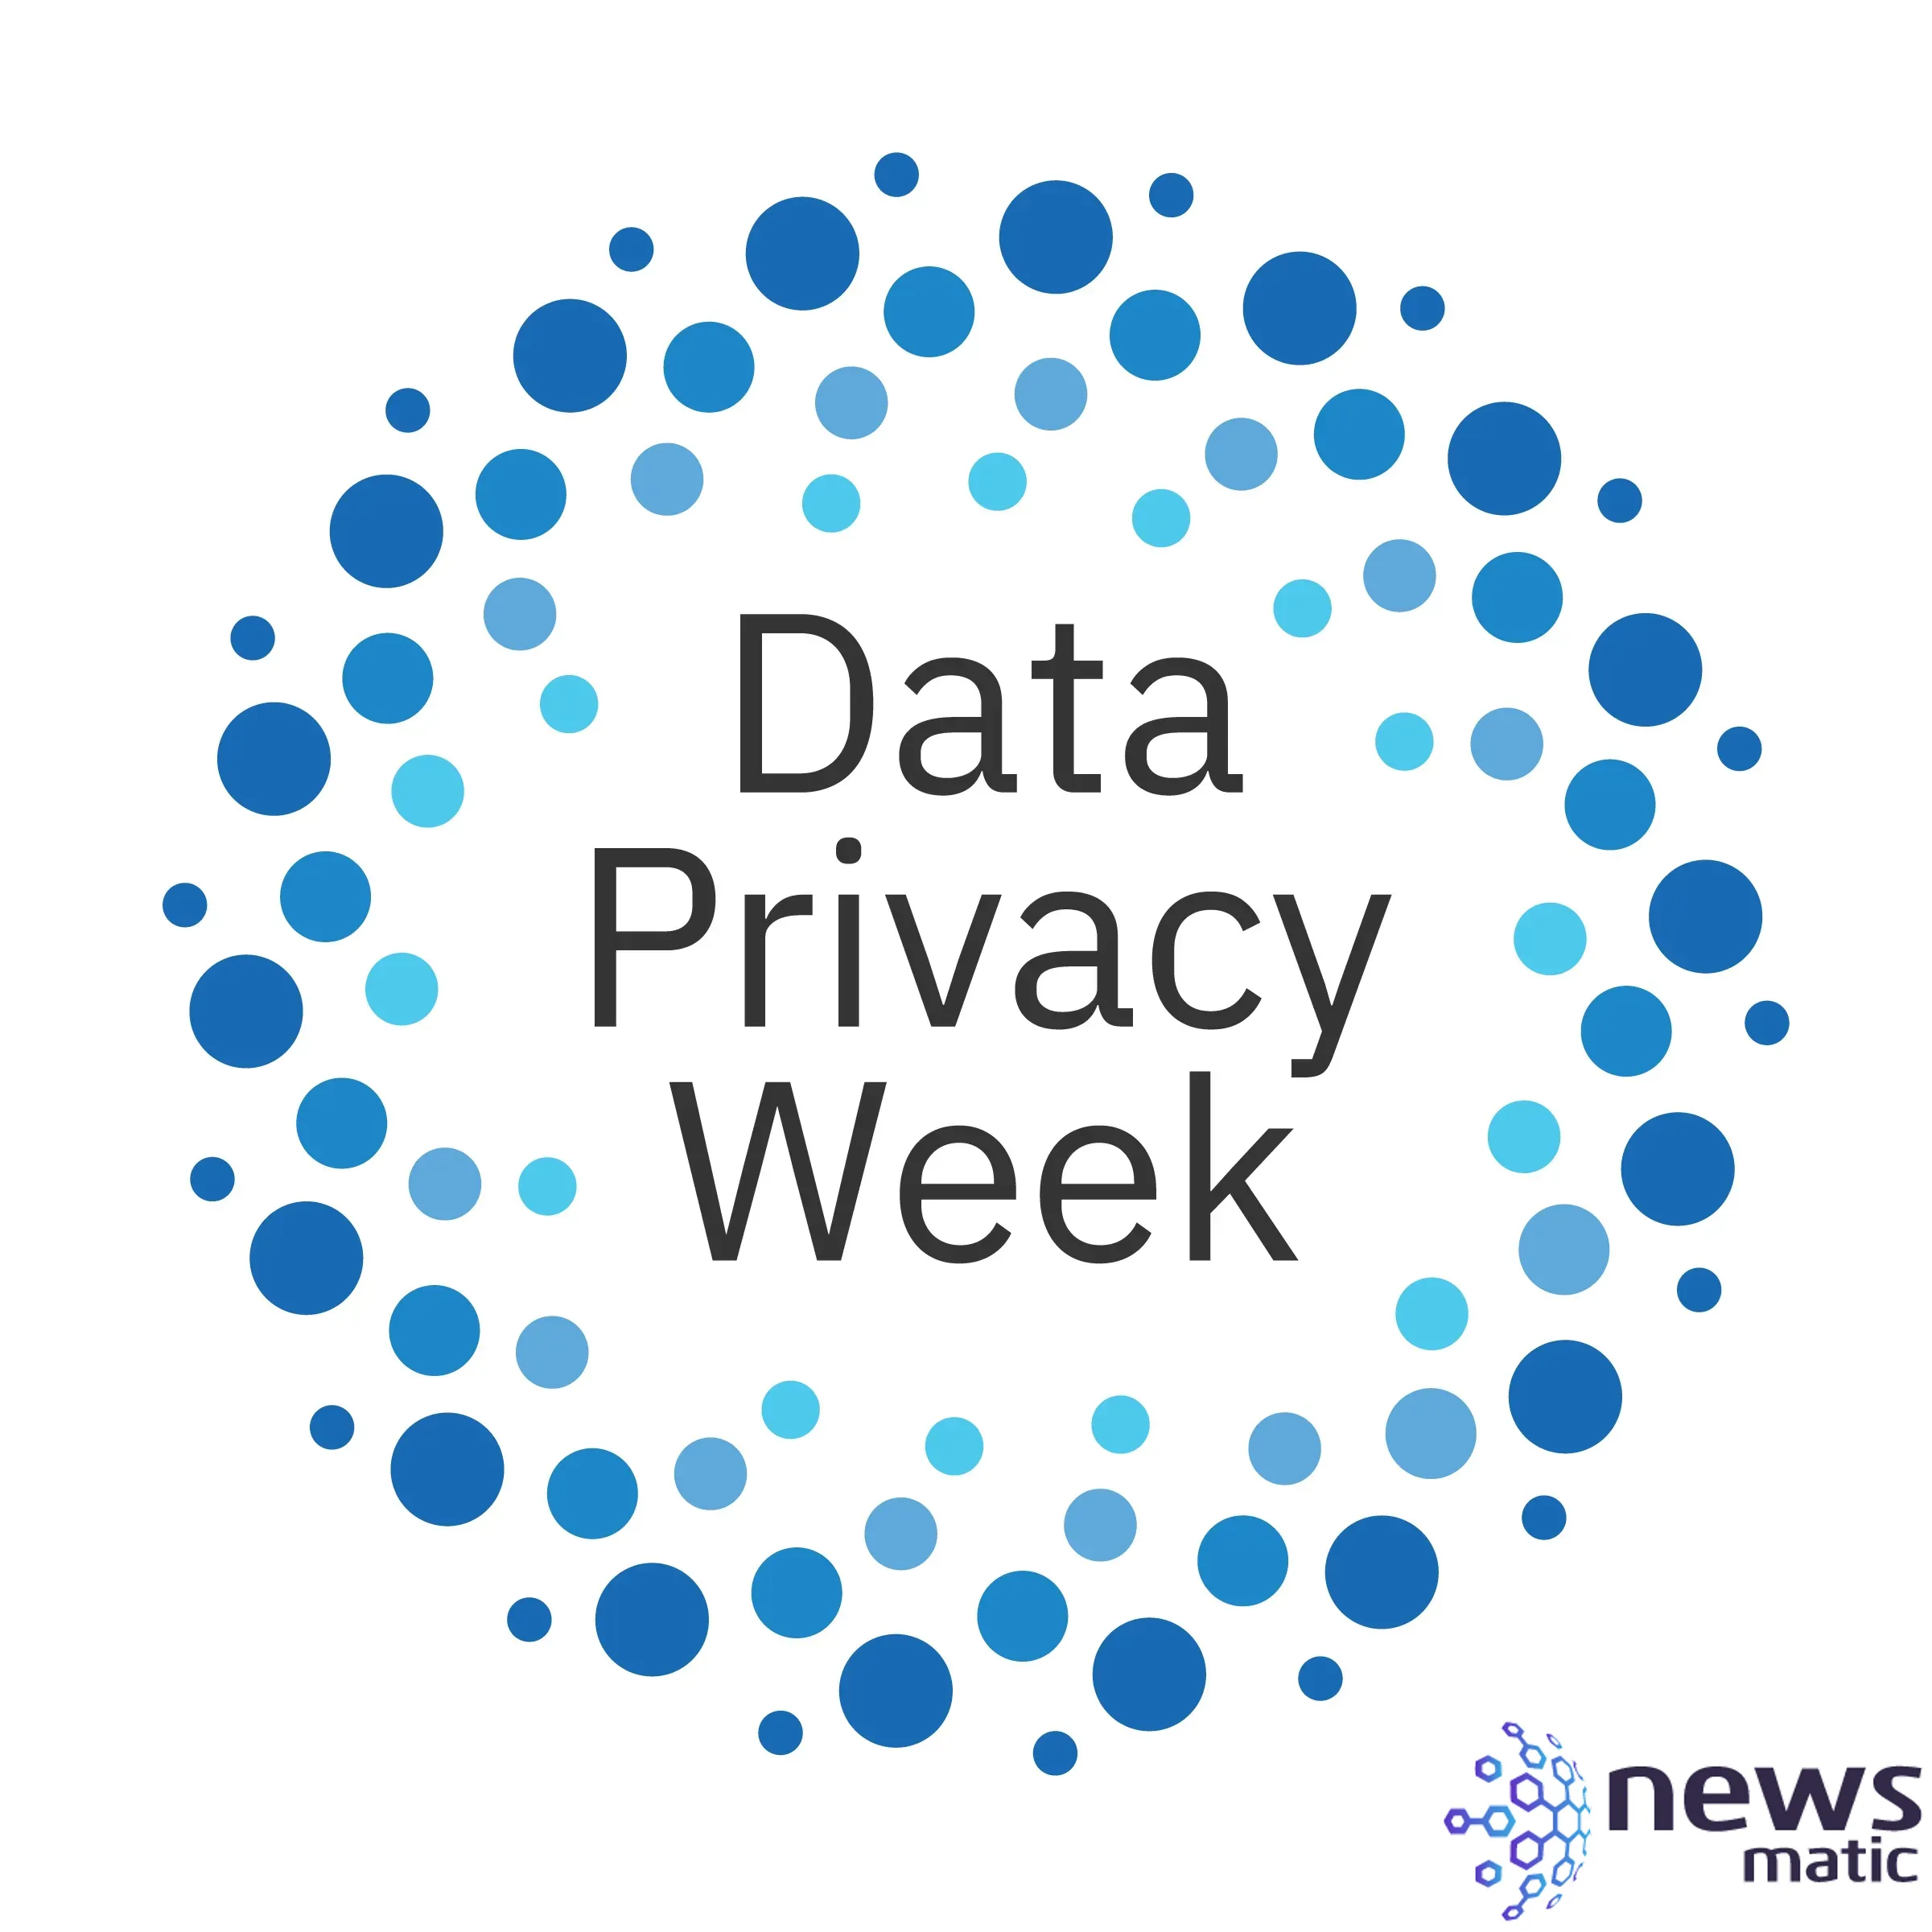 Semana de la Privacidad de Datos: Eventos virtuales y webinars para proteger tus datos personales - Big Data | Imagen 2 Newsmatic